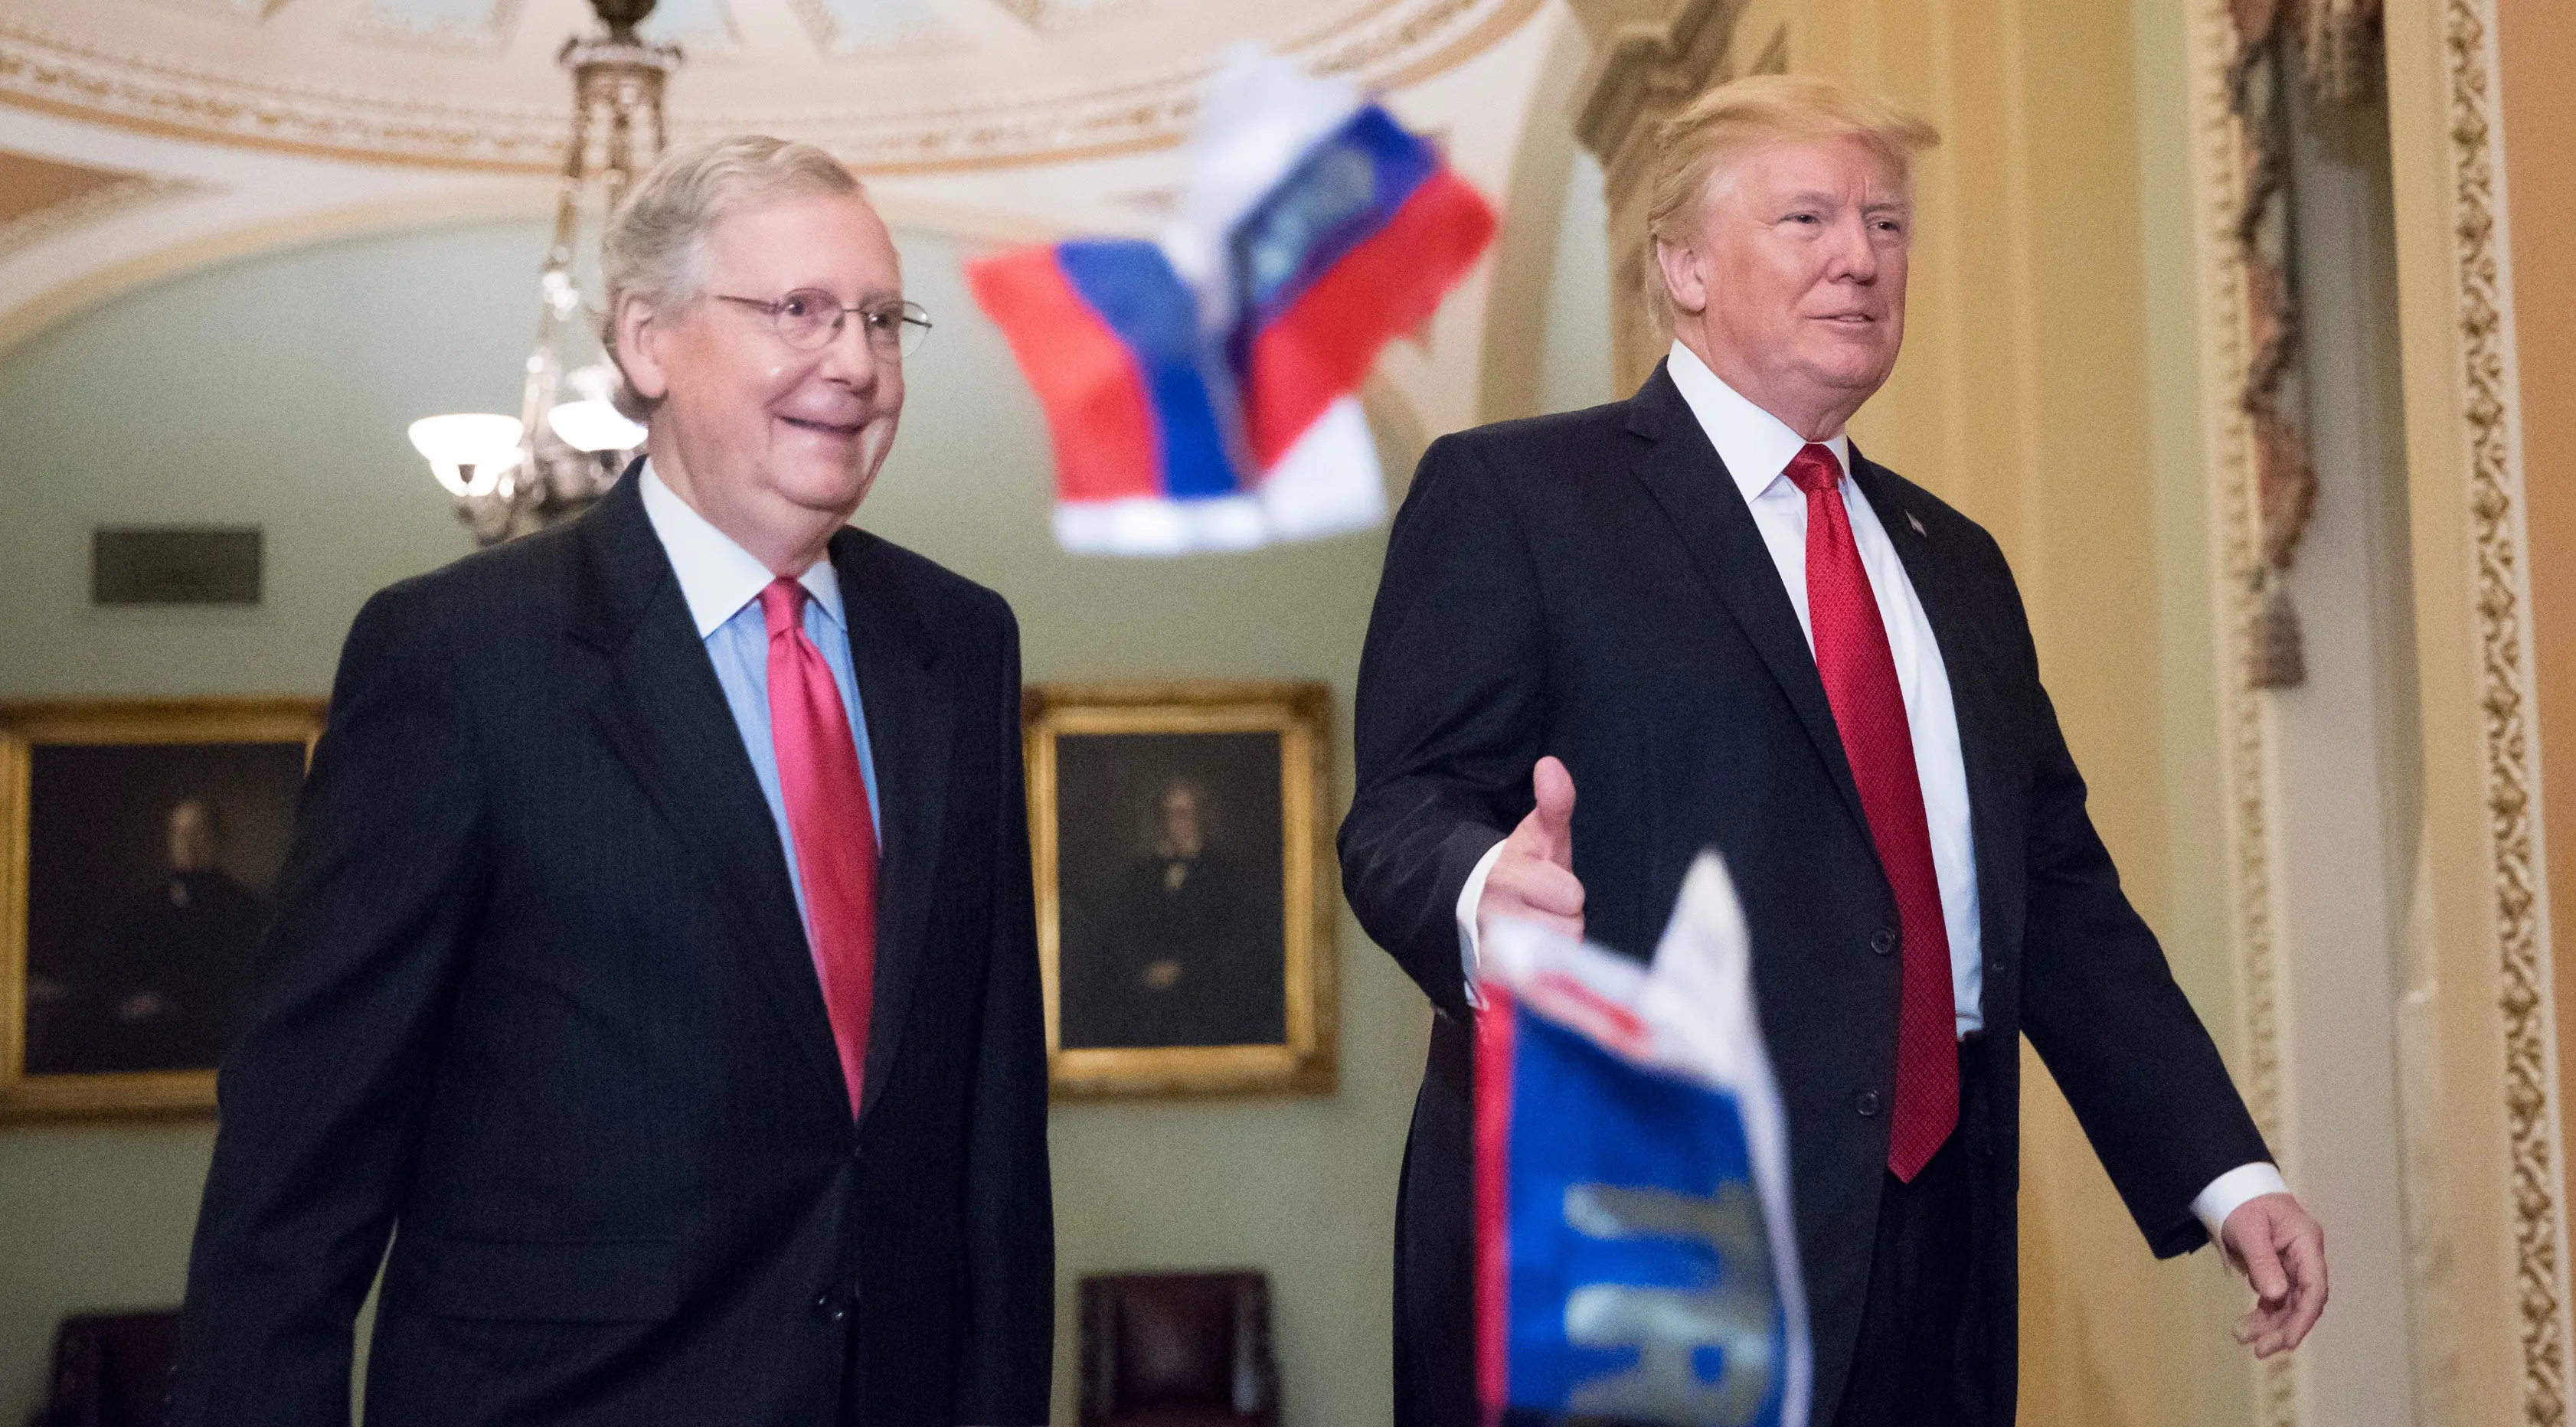 Bendera Rusia dilemparkan ke arah Presiden AS, Donald Trump yang berjalan bersama senator Mitch McConnel di Capitol Hill, Washington DC, Selasa (24/10). Pada saat itu, Trump hendak hadir di acara makan siang rutin dengan senator. (AP/J. Scott Applewhite)